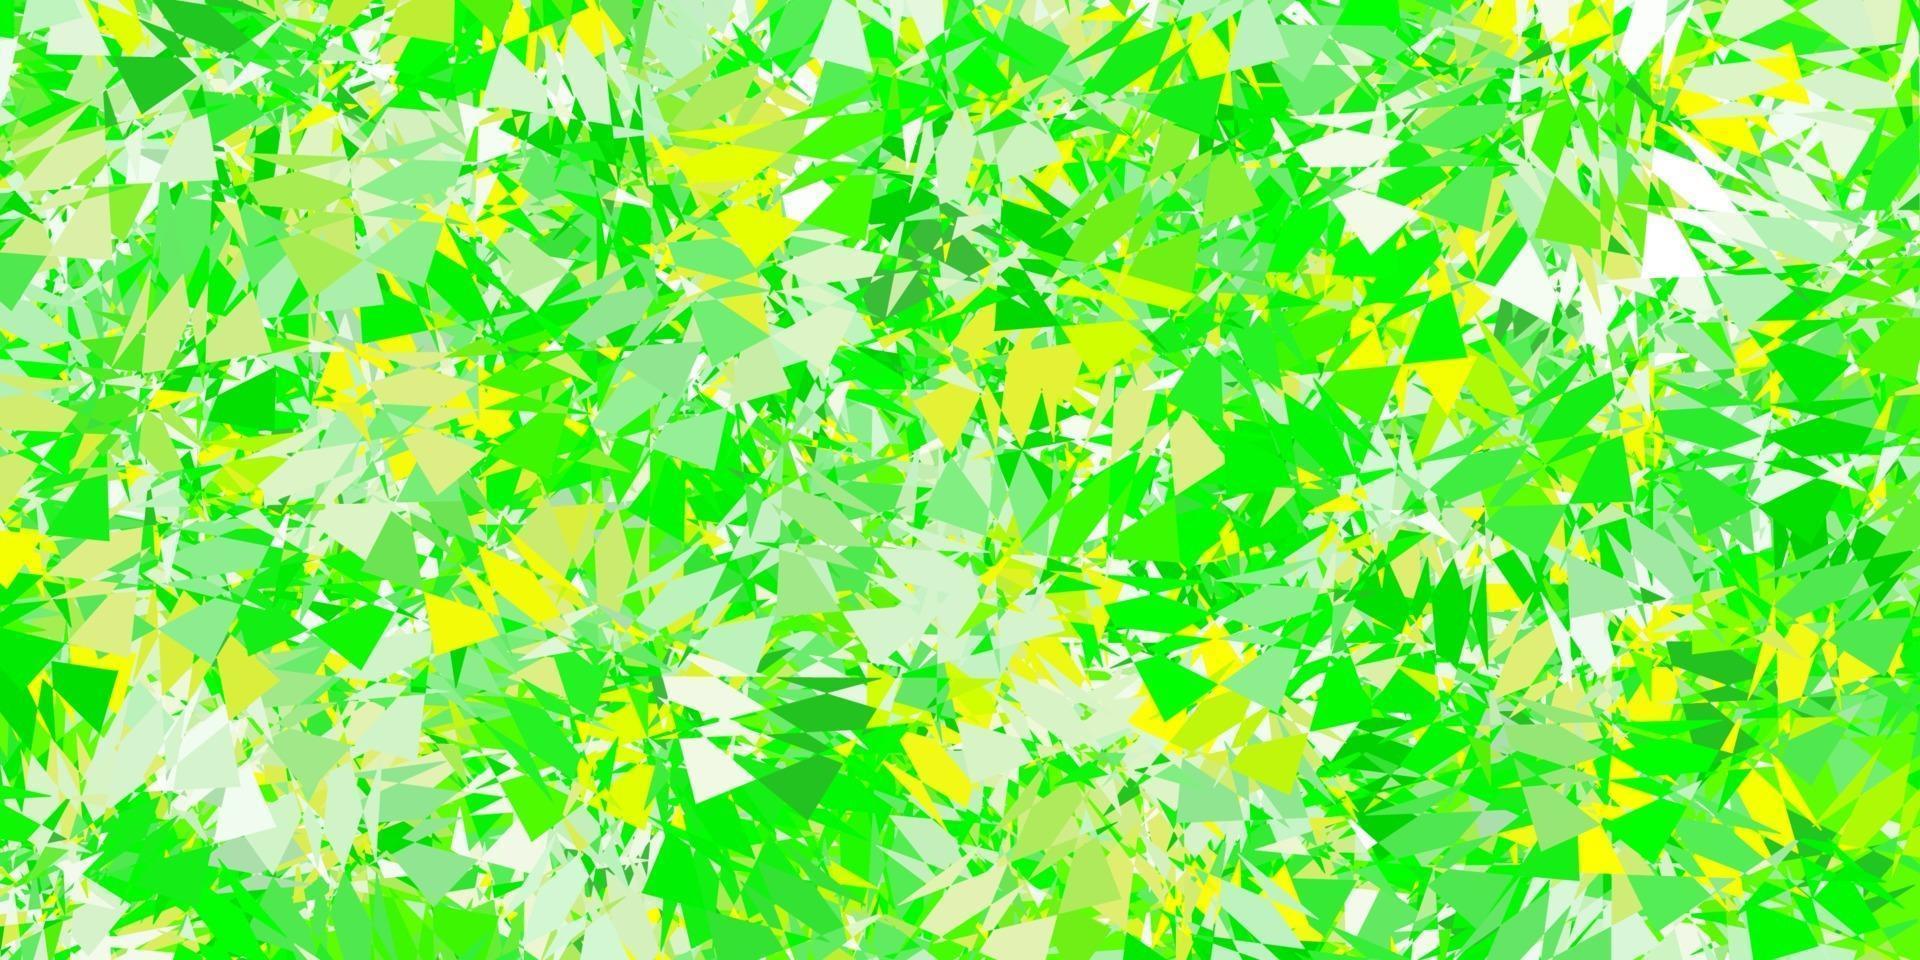 fond de vecteur vert clair, jaune avec des formes polygonales.